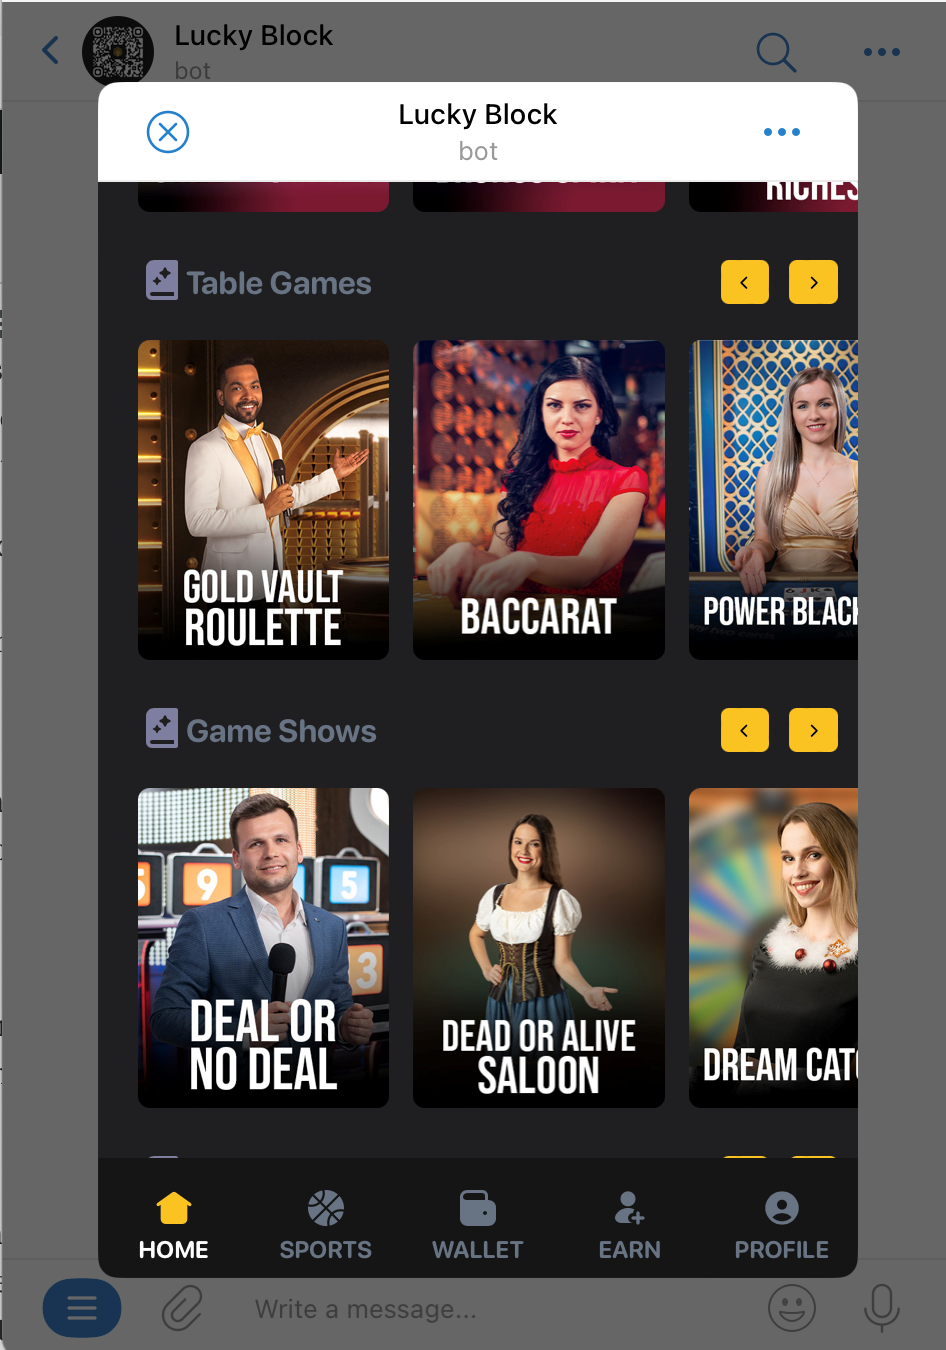 Lucky Block Telegram casino | DeviceDaily.com